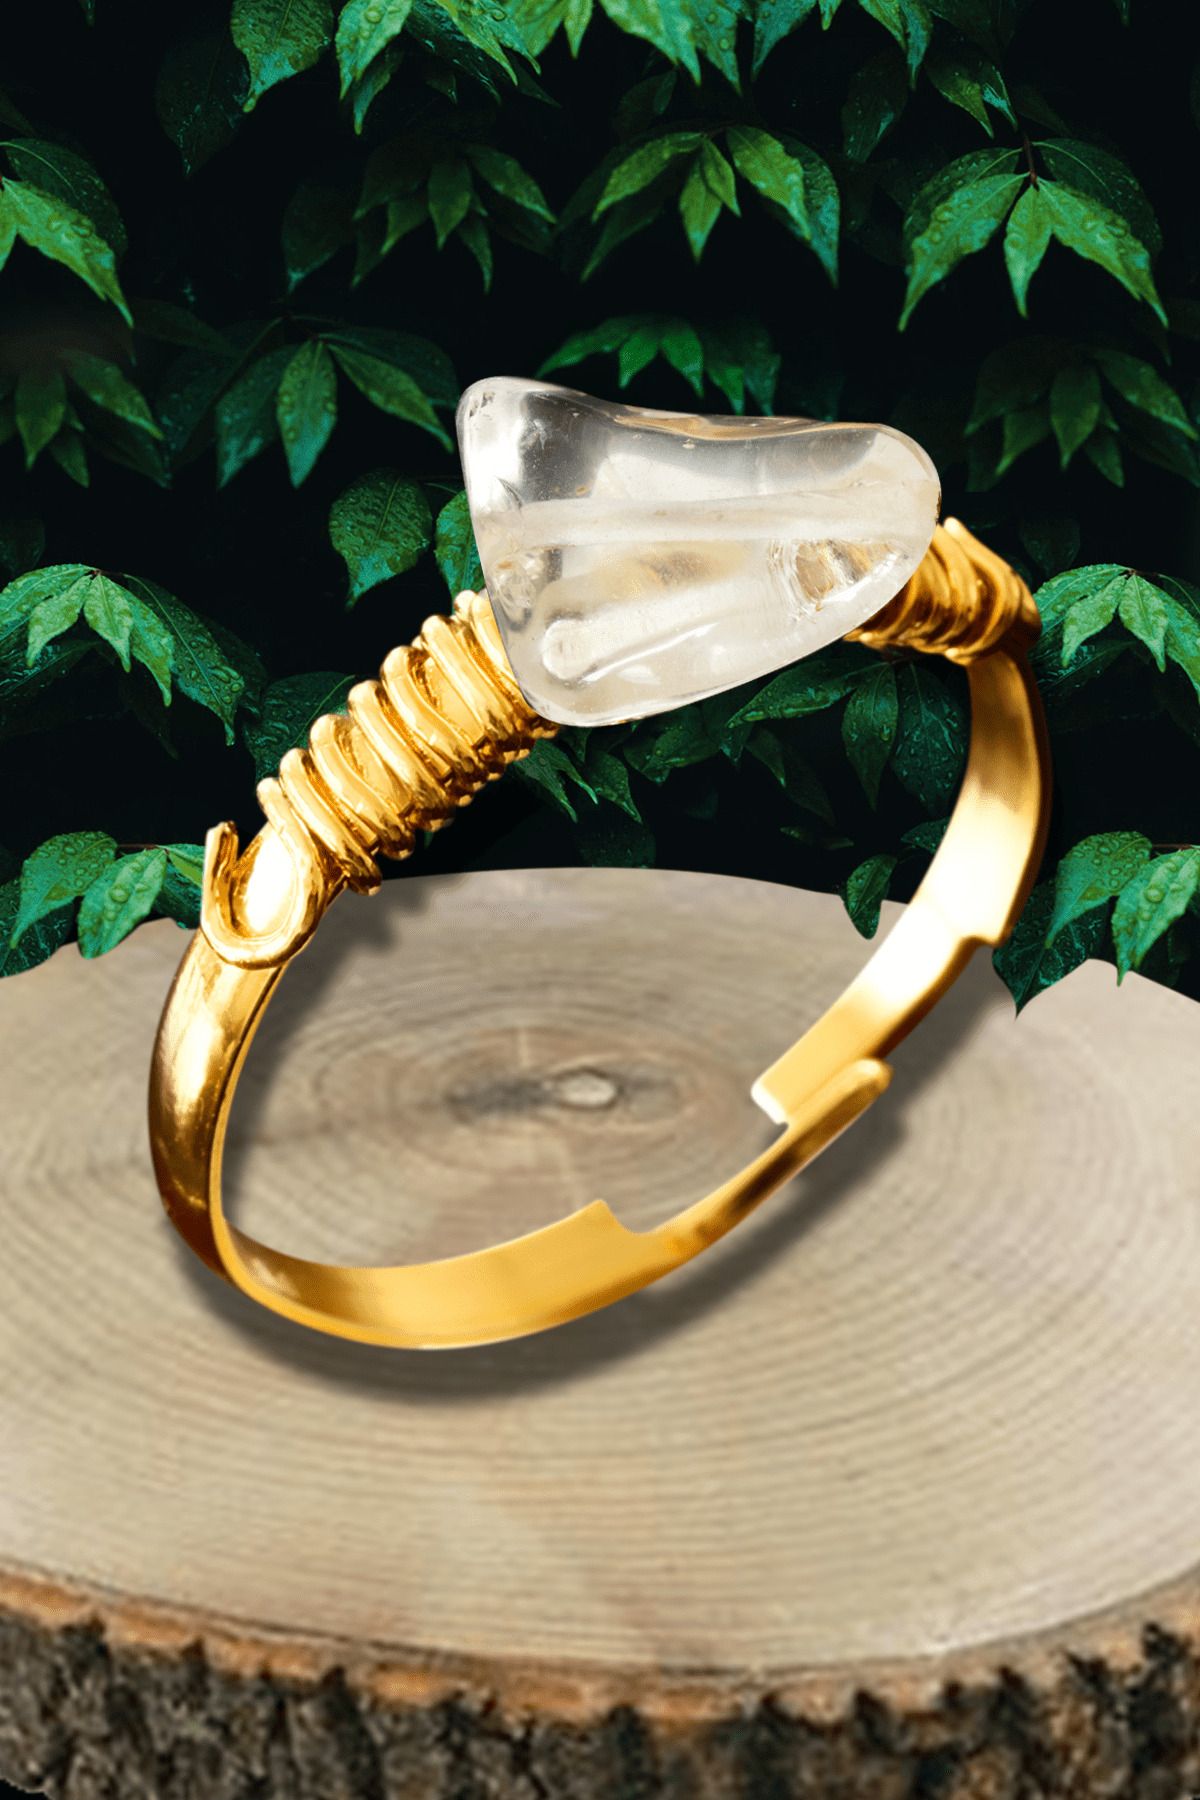 Tesbih Atölyesi Sertifikalı Gold Kırık Taşlı İnce Model Kristal Kuvars Taşı Yüzük - Ayarlamalı